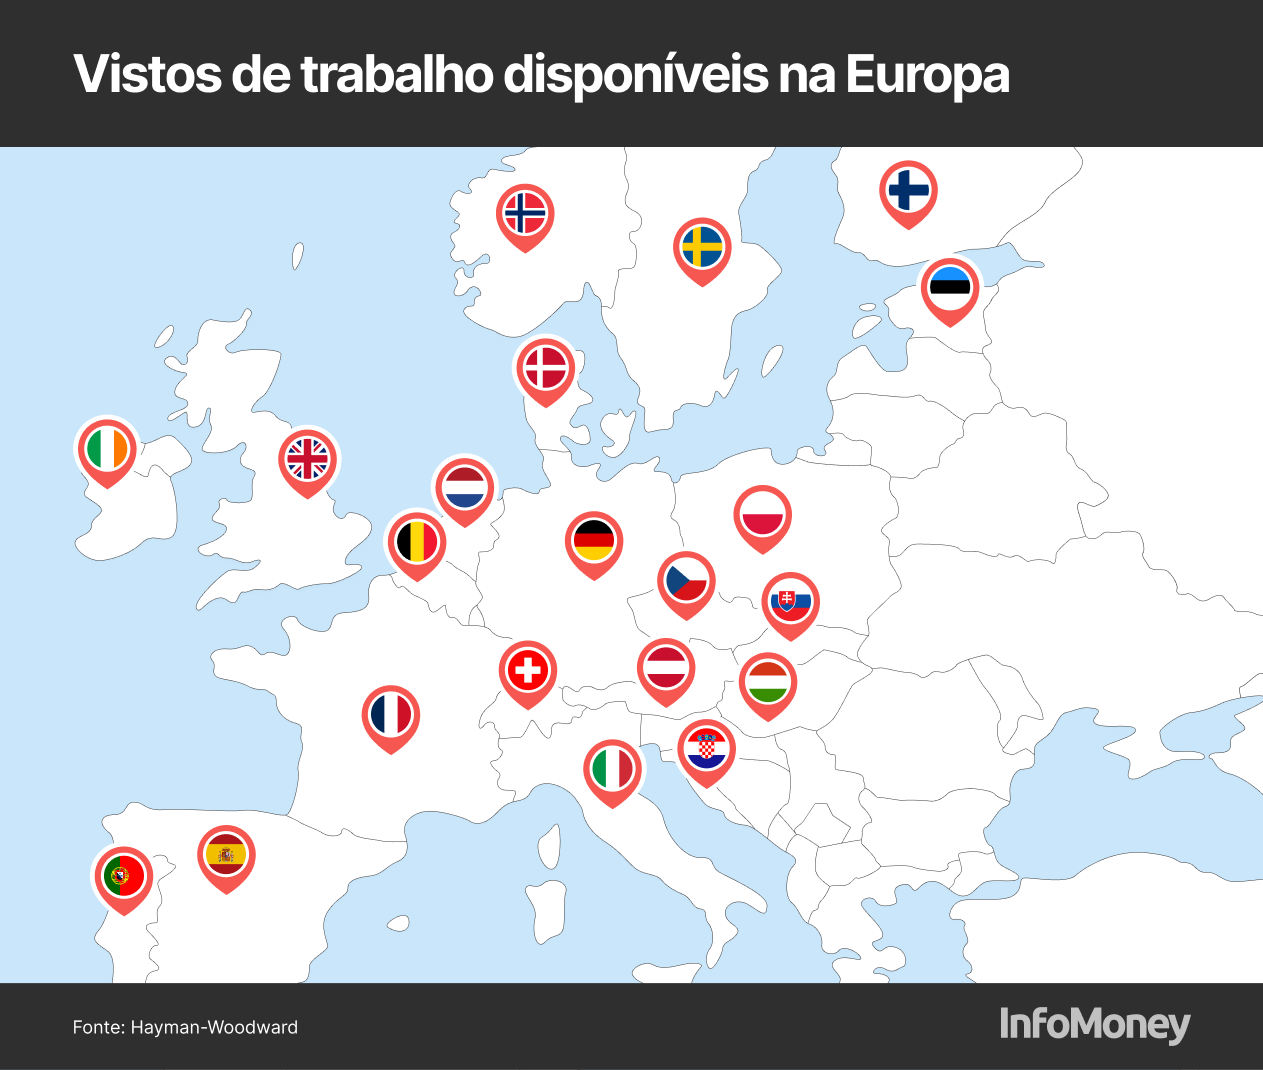 21 vistos de trabalho disponíveis para brasileiros na Europa; veja lista completa